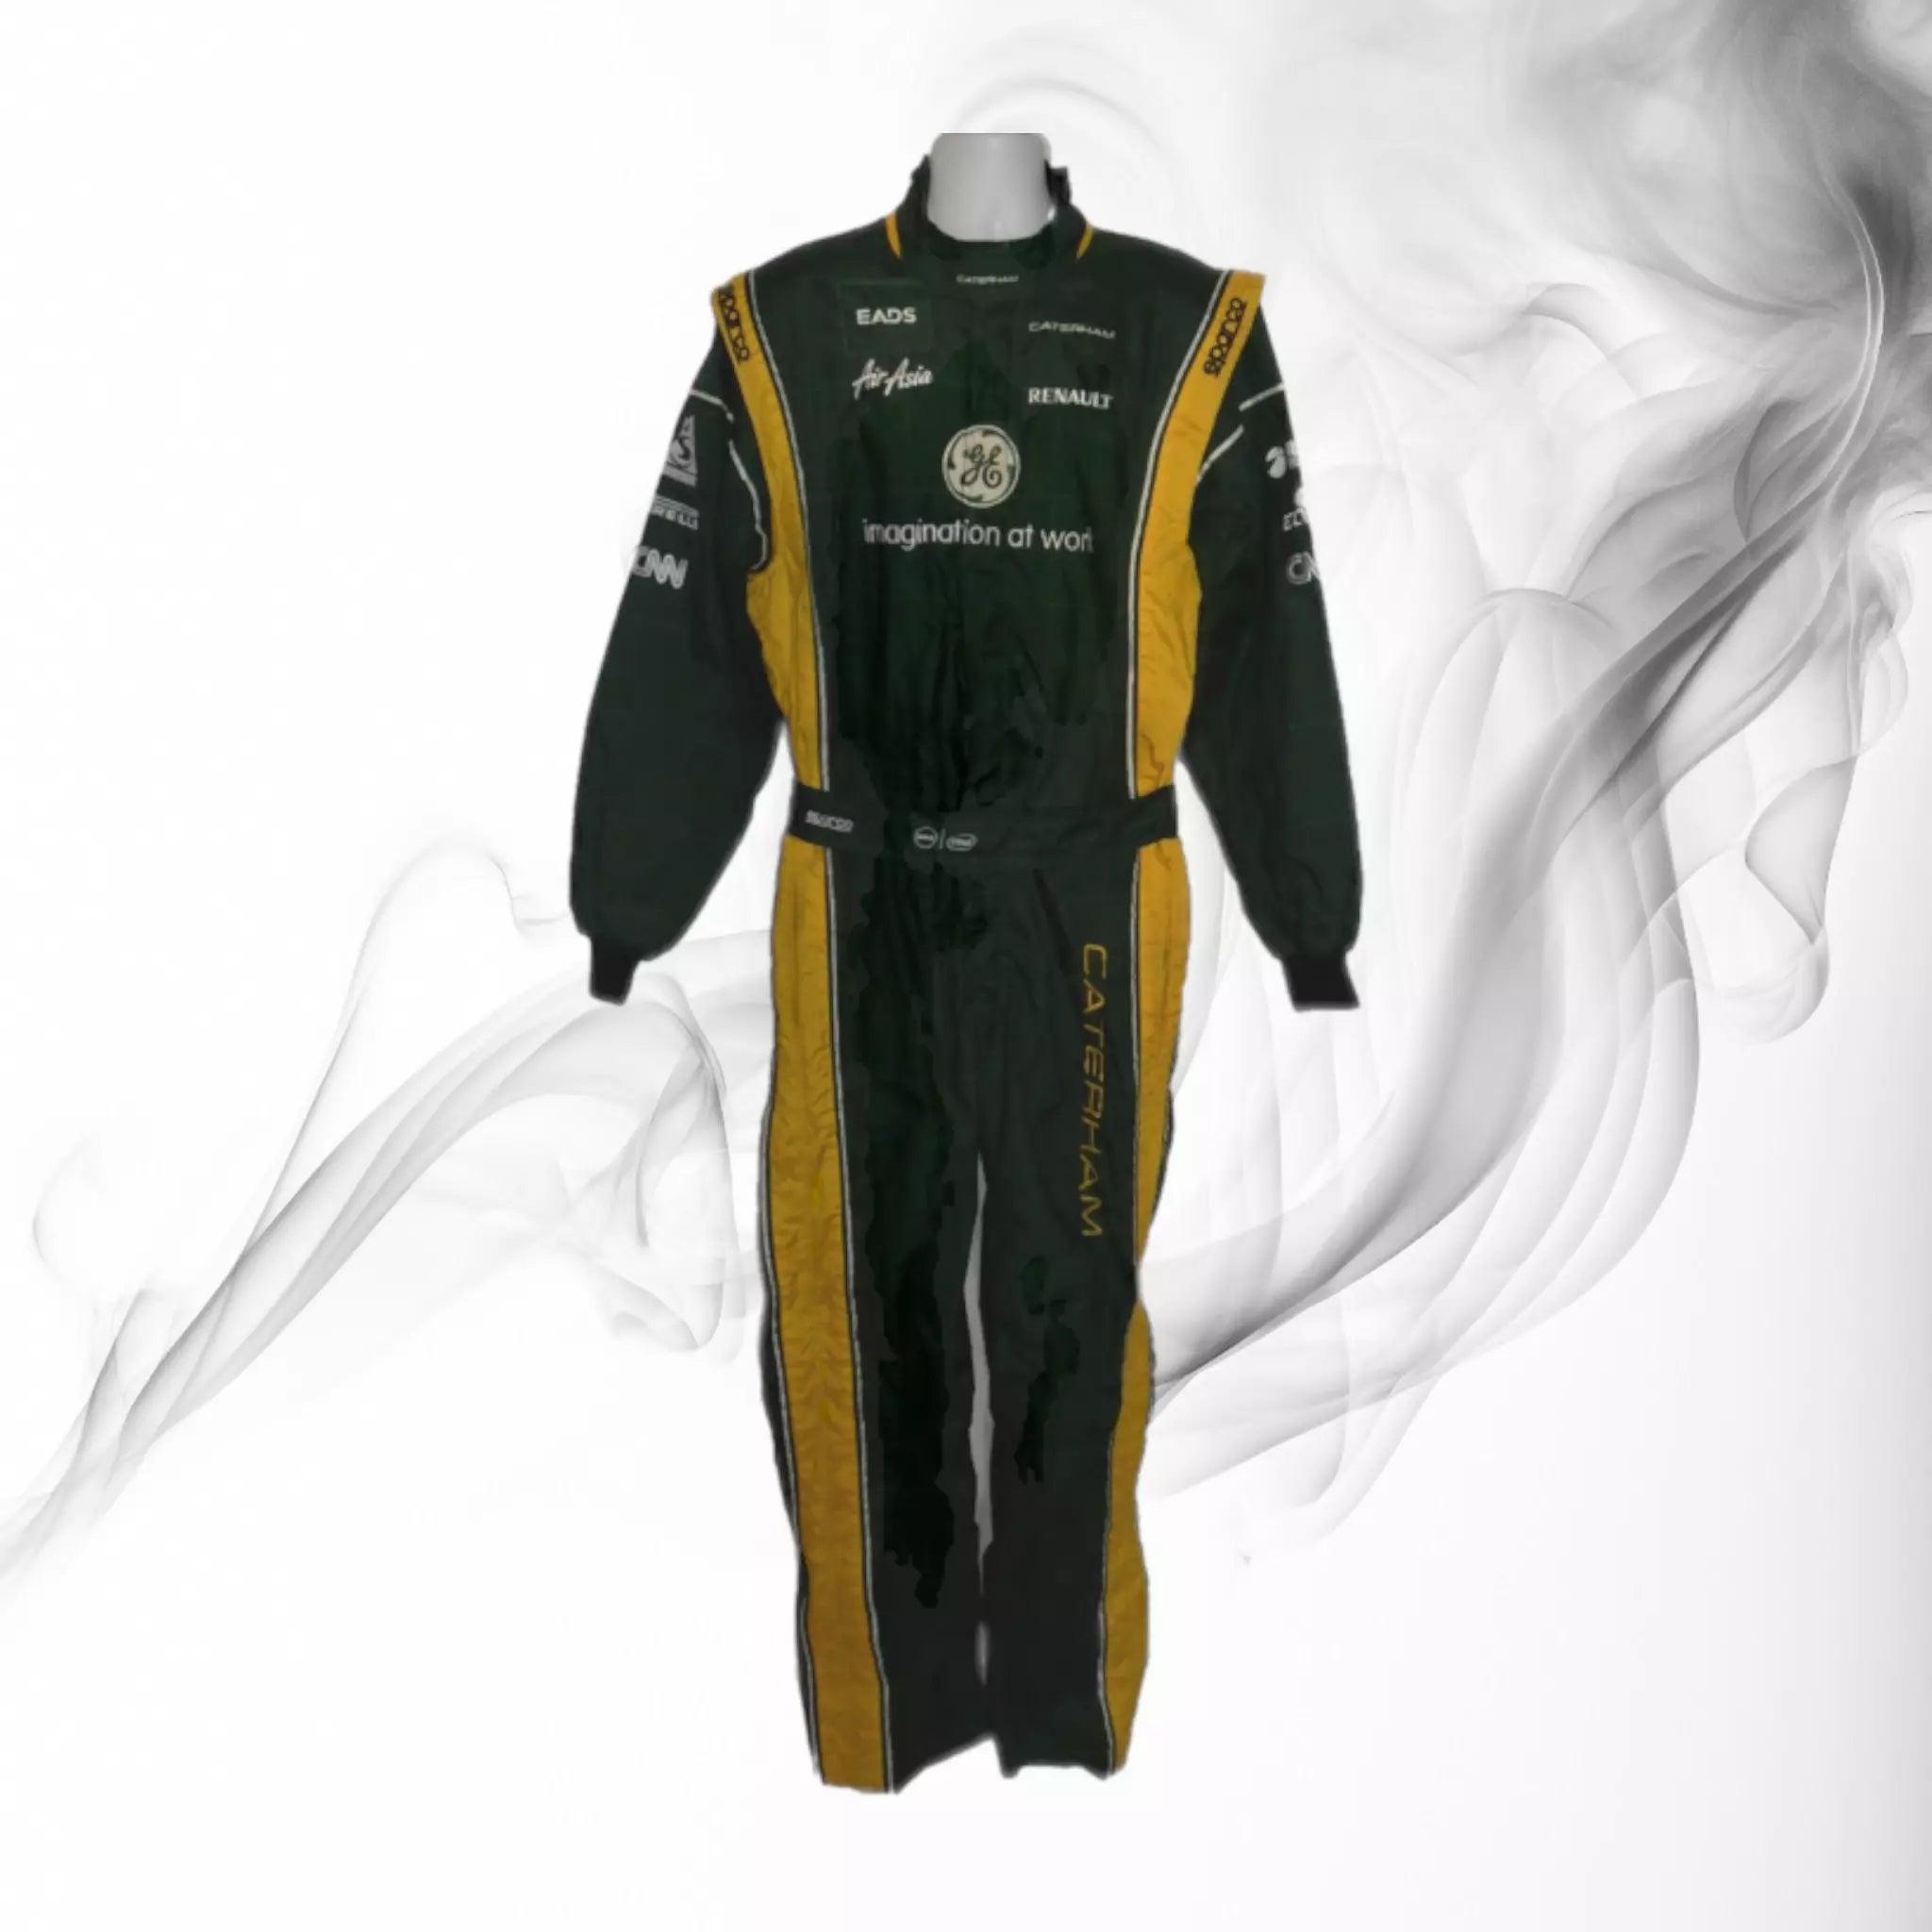 Caterham F1 2012 pit crew suit - Dash Racegear 